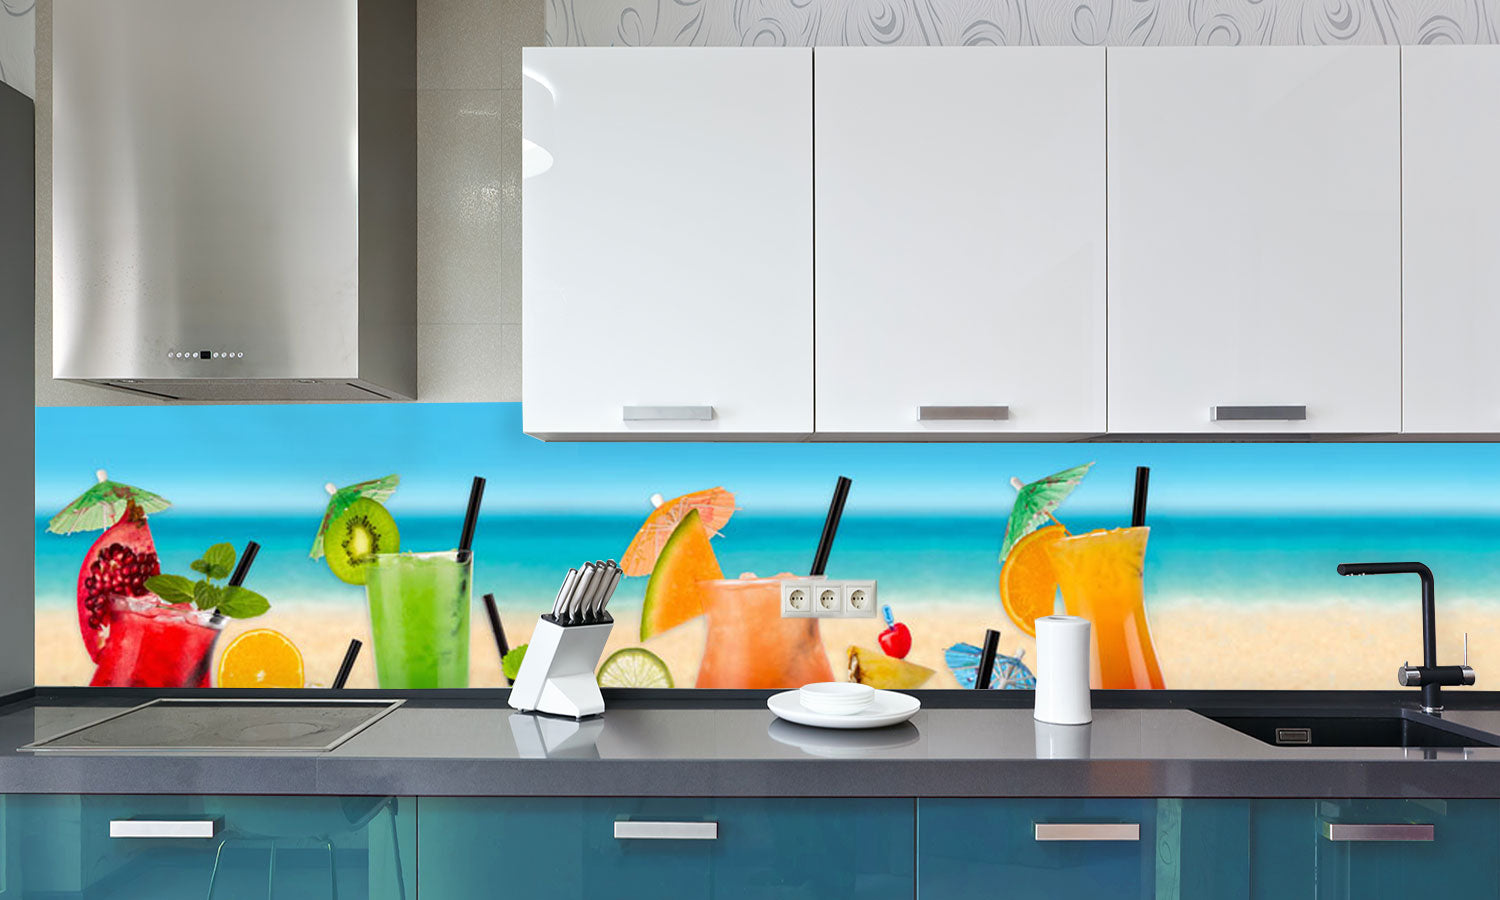 Paneli za kuhinje Waterfall in Cocktail beach -  Stakleni / PVC ploče / Pleksiglas -  sa printom za kuhinju, Zidne obloge PKU235